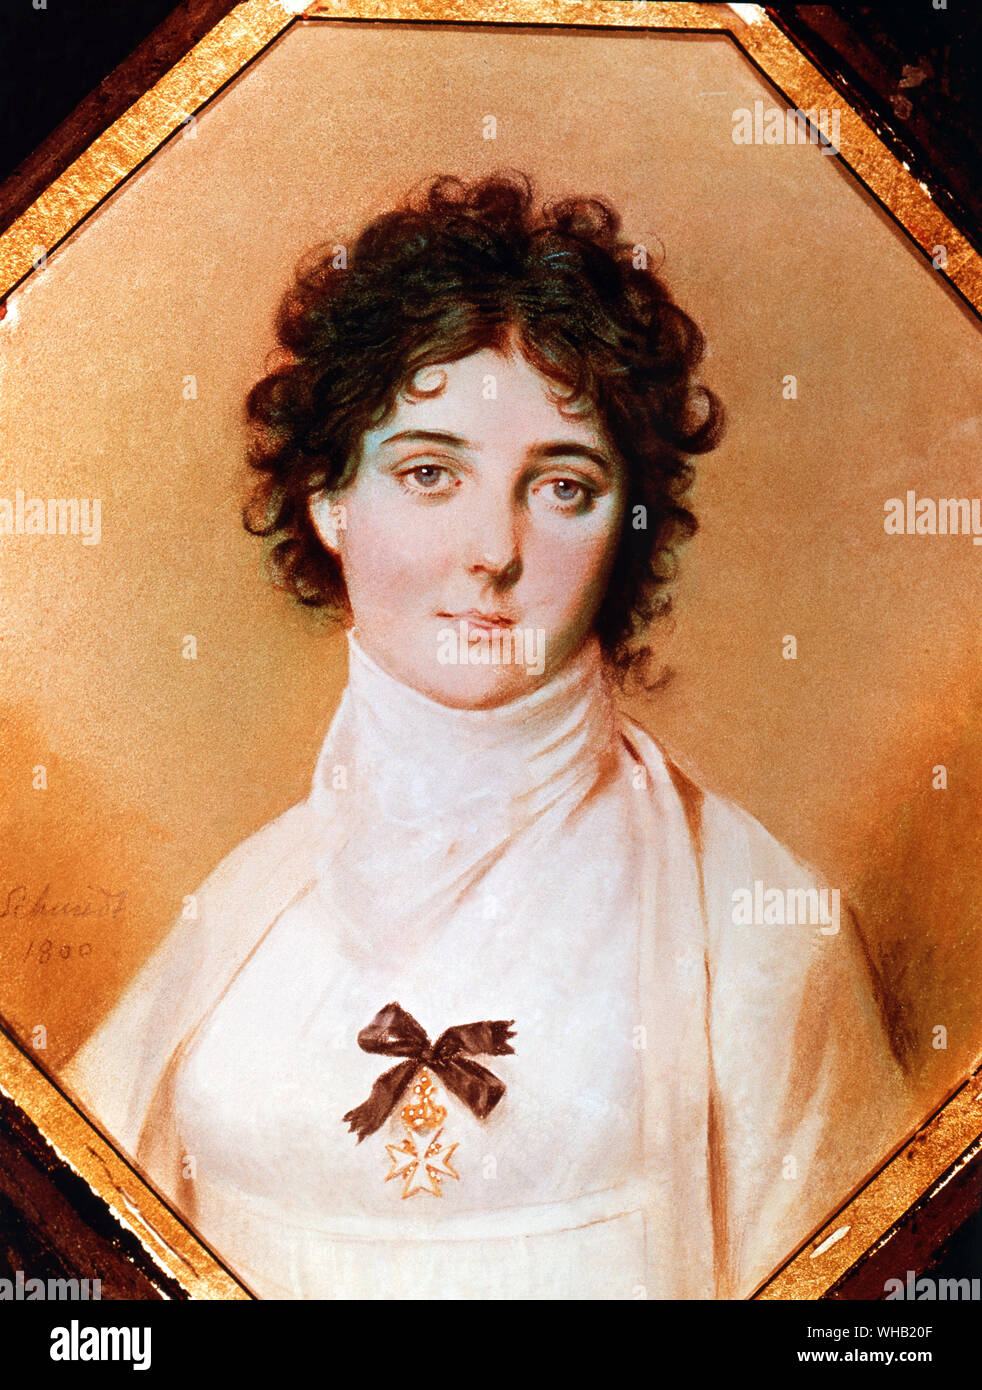 Emma Hamilton - Nelson preferito del ritratto di Emma, indossando la croce di Malta è stato dipinto nel 1800 a Dresda da J. Schmidt. Il dipinto appeso in Nelson's cabin sulla vittoria.. Foto Stock